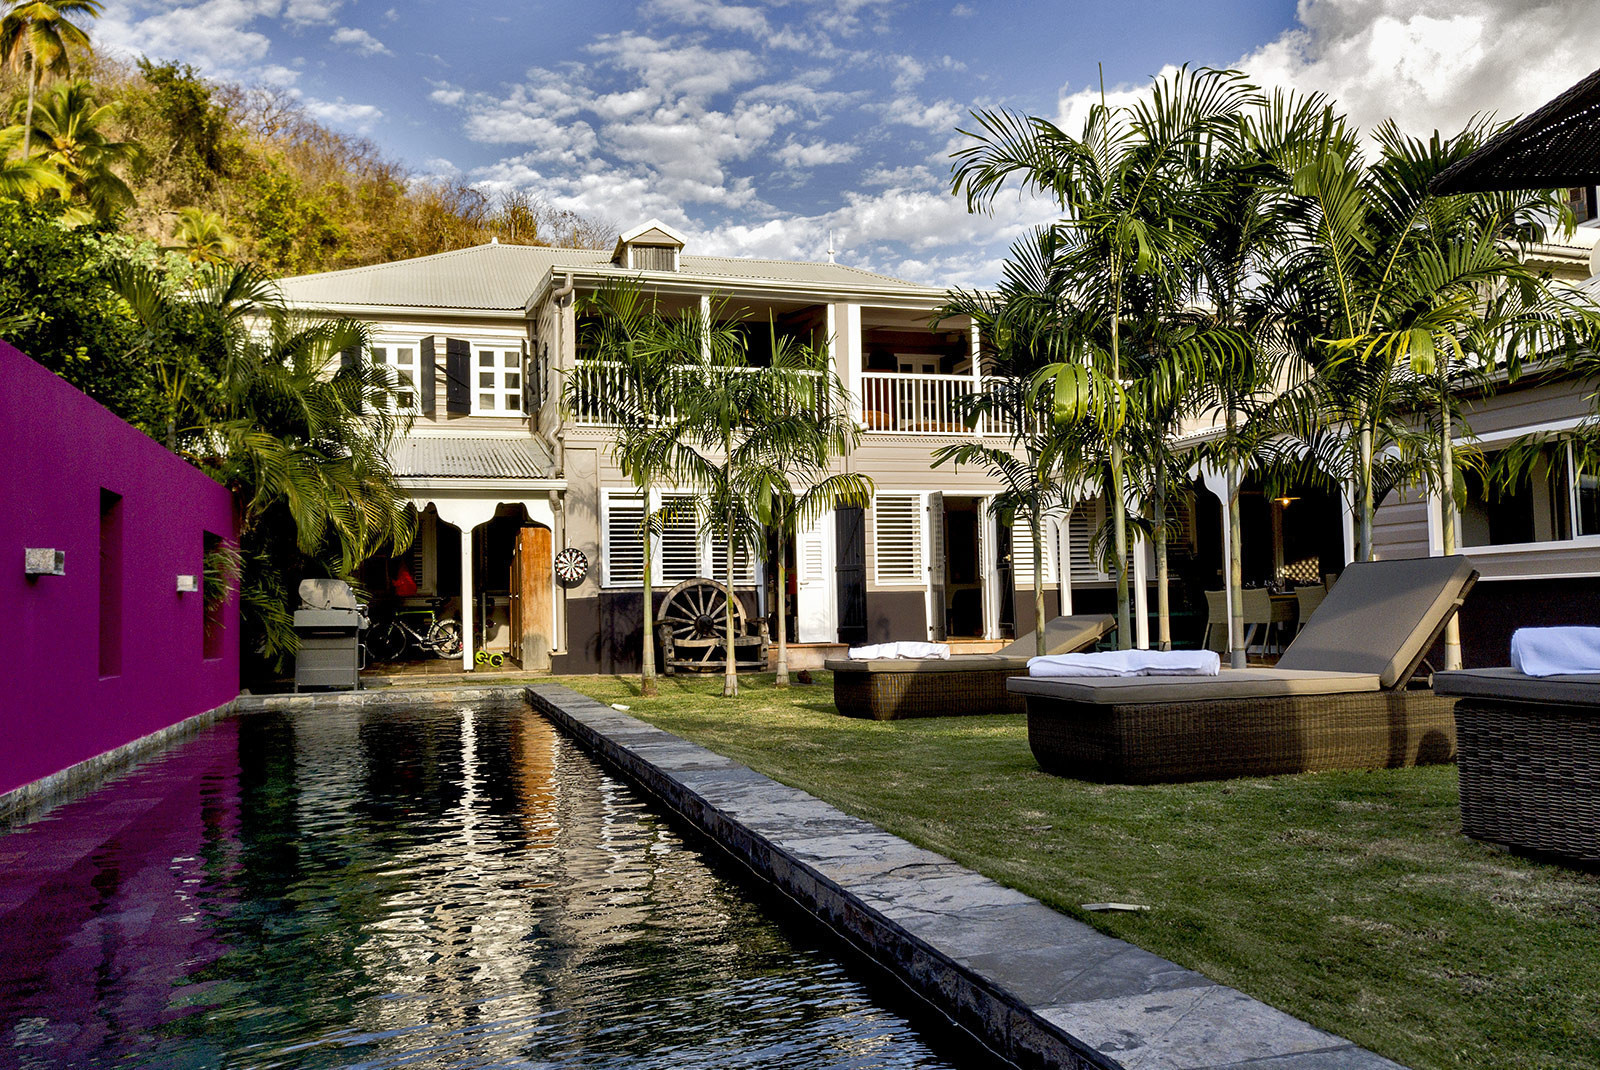 MAISON NEISSON location villa d'Exception Martinique sur la plage du Carbet Martinique - 